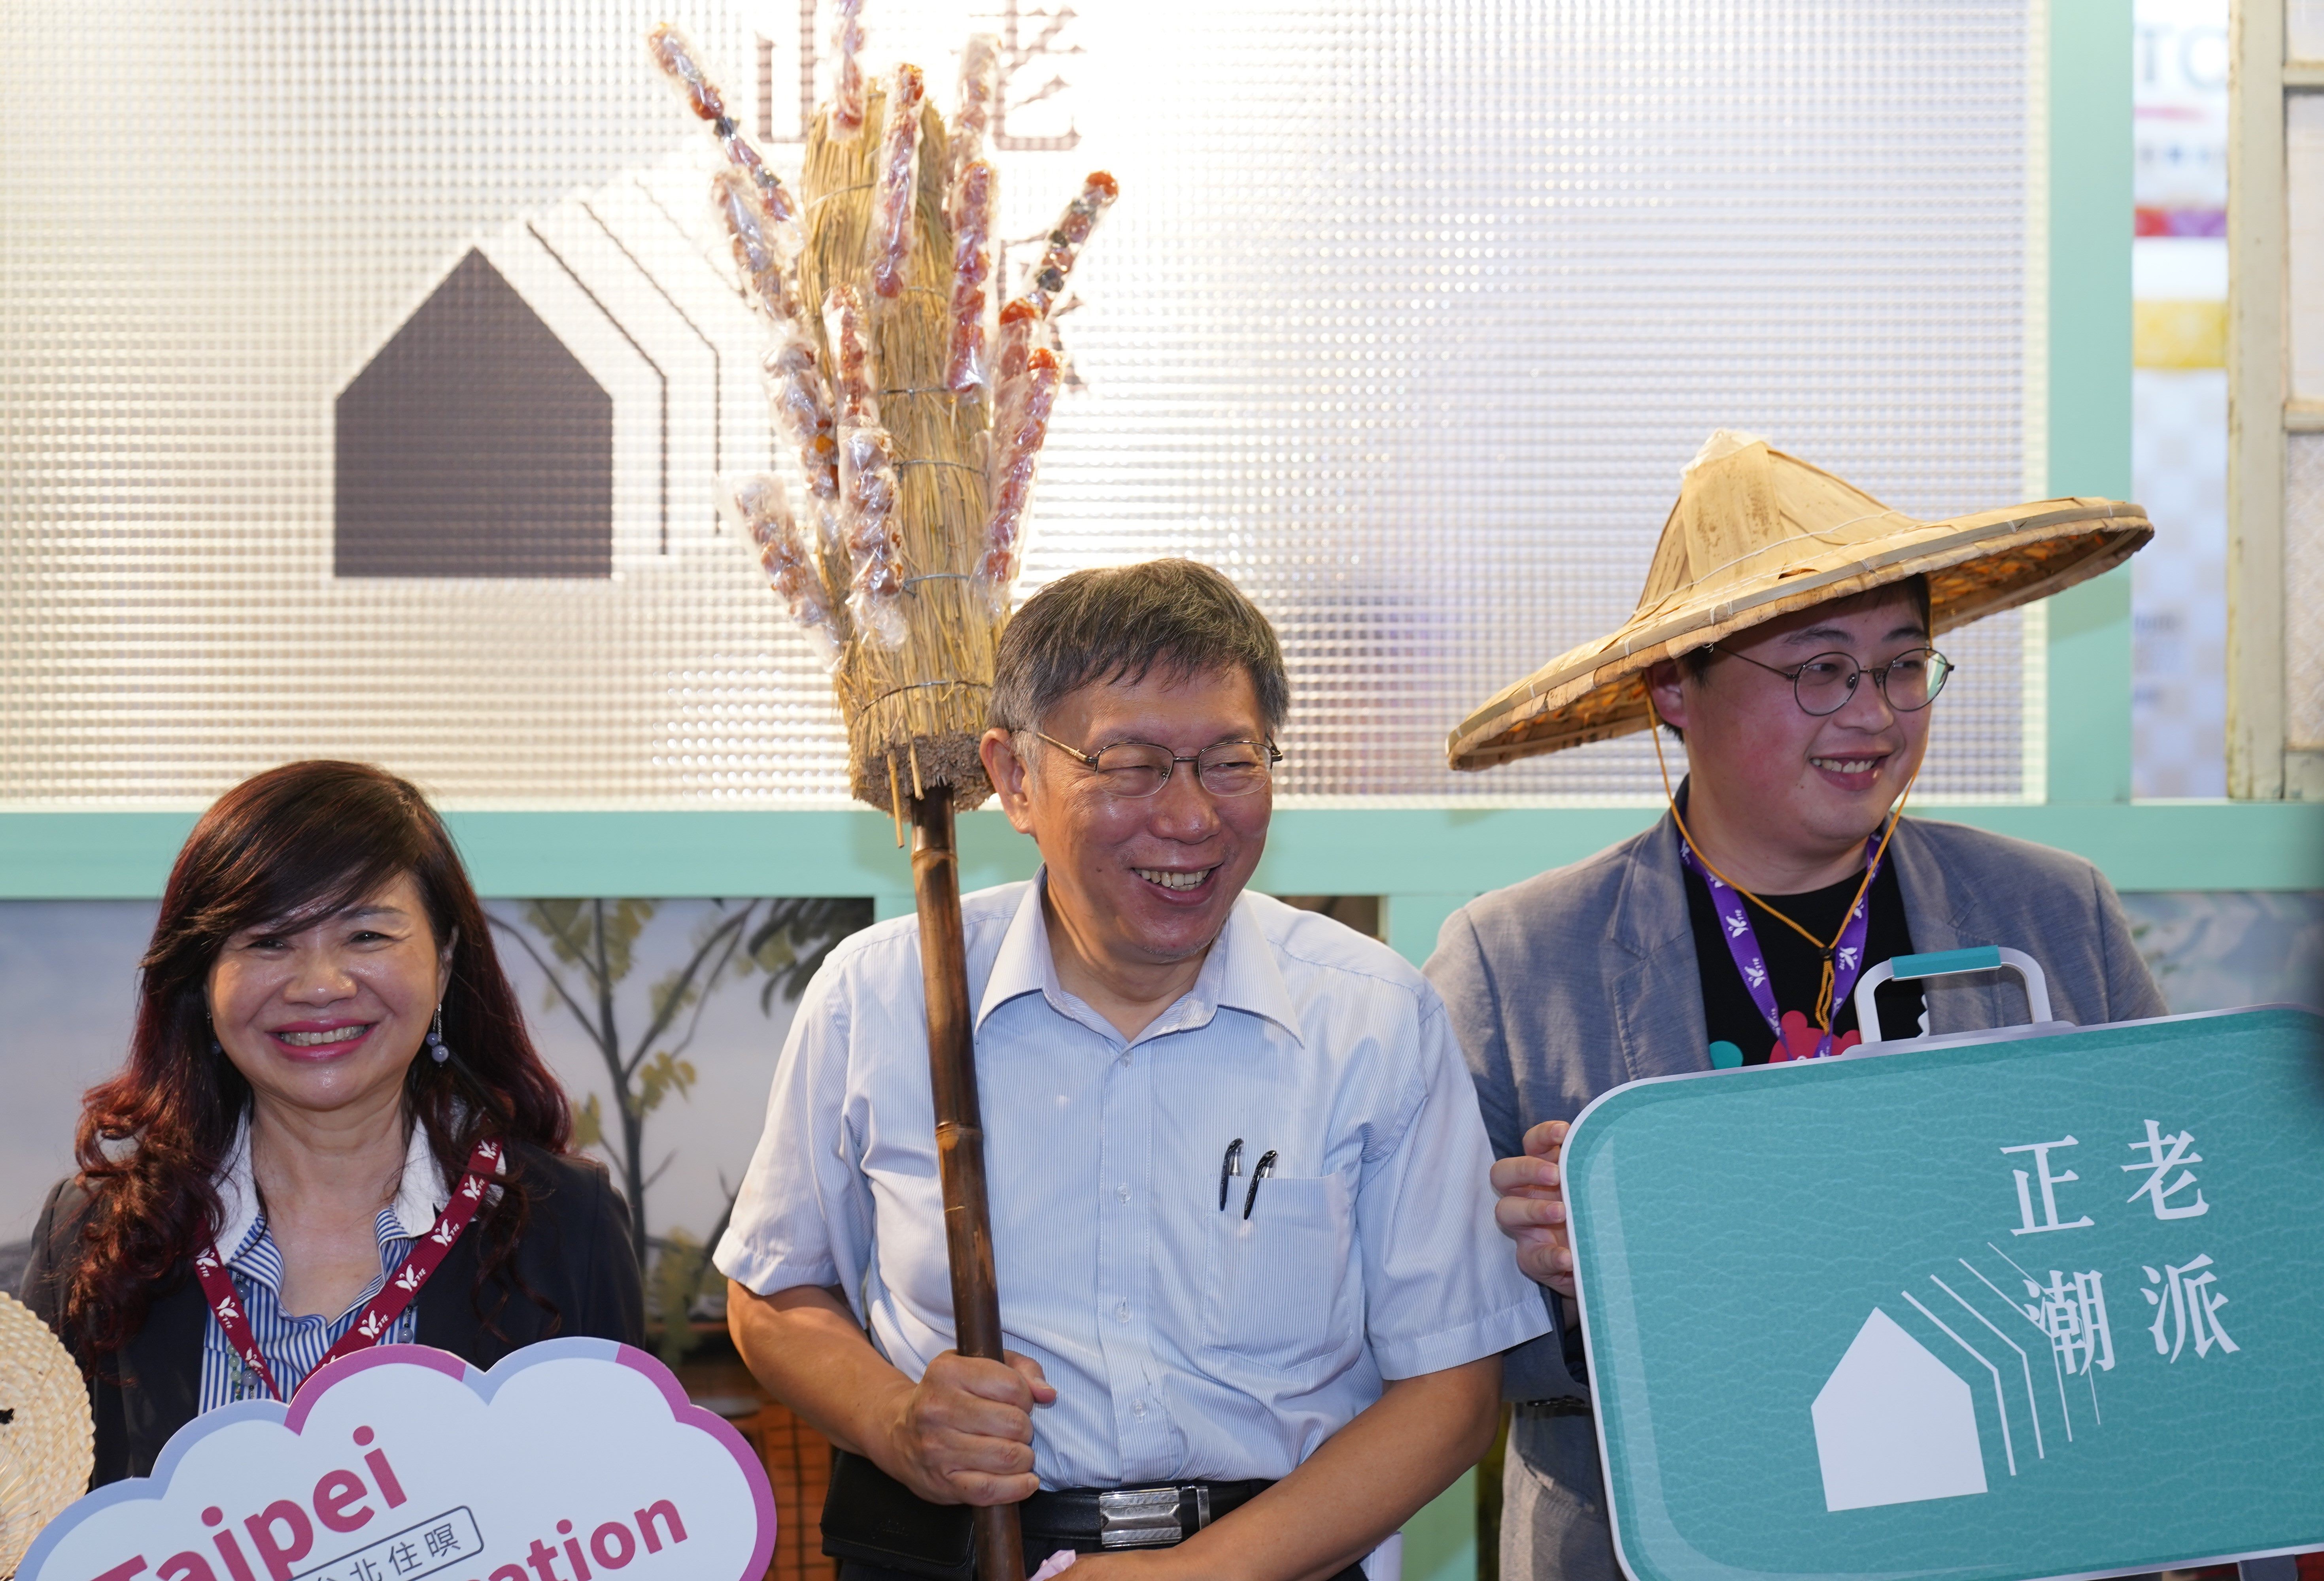 為呼應本次展會主題，臺北市長柯文哲手持糖葫蘆竹掃驚喜現身與民眾同樂。